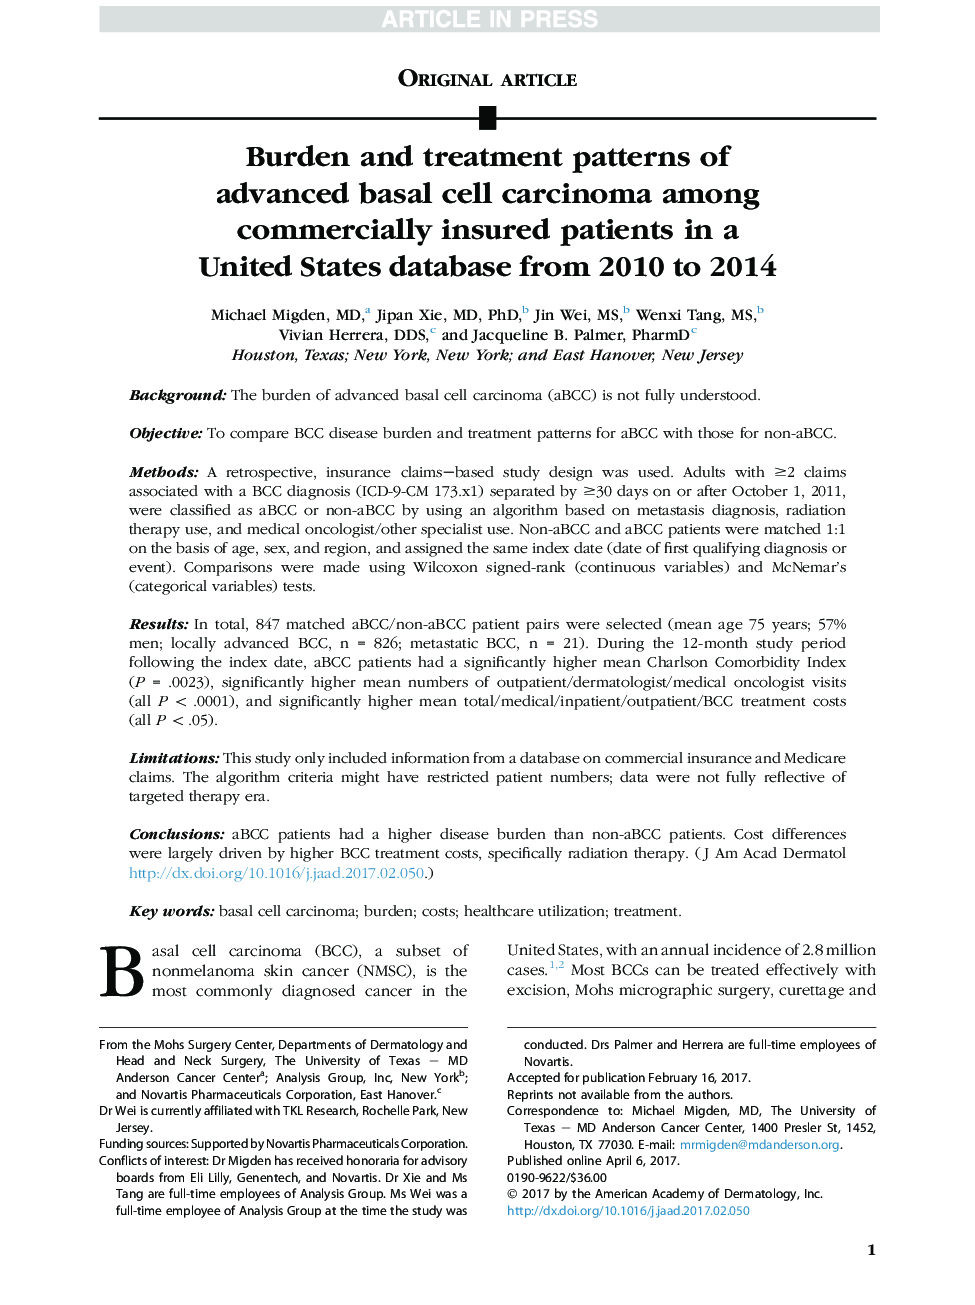 الگوهای باروری و درمان کارسینوم سلول های پیشرفته بازال در بیماران تجاری بیمه شده در یک پایگاه داده ای در ایالات متحده از سال 2010 تا 2014 